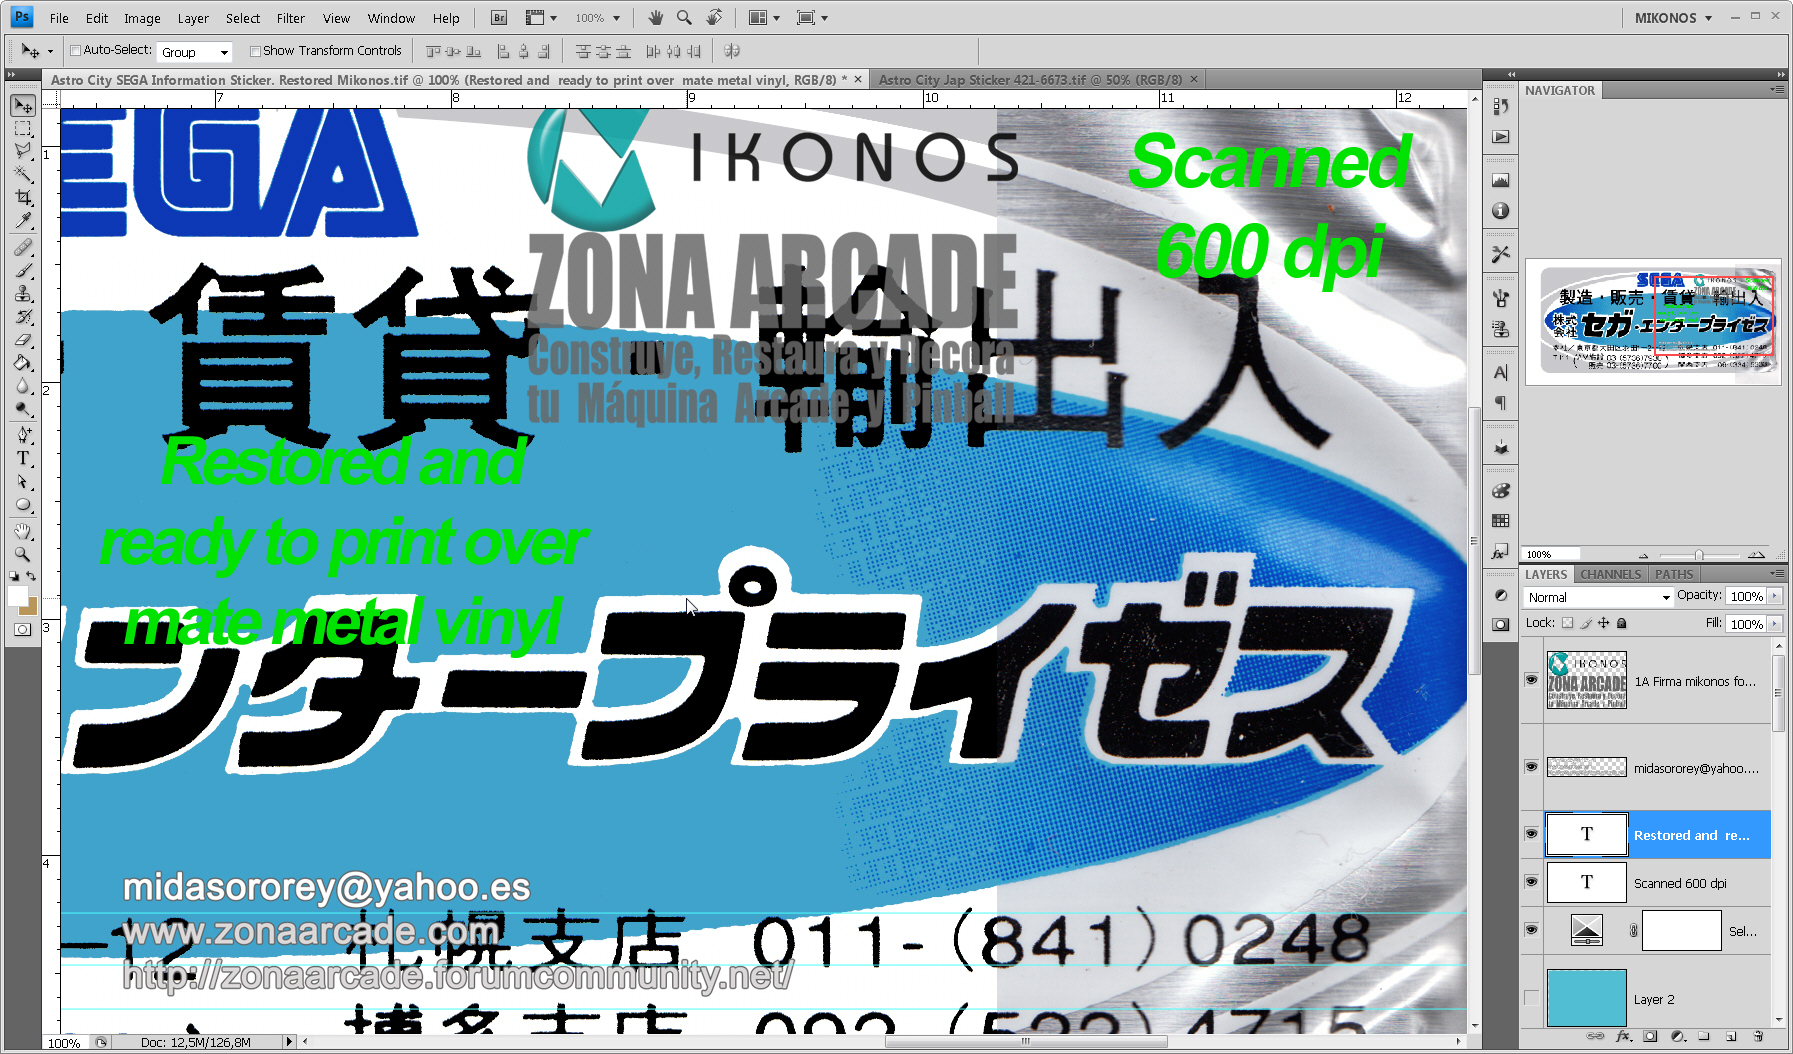 SEGA Information Sticker. Restored Mikonos1